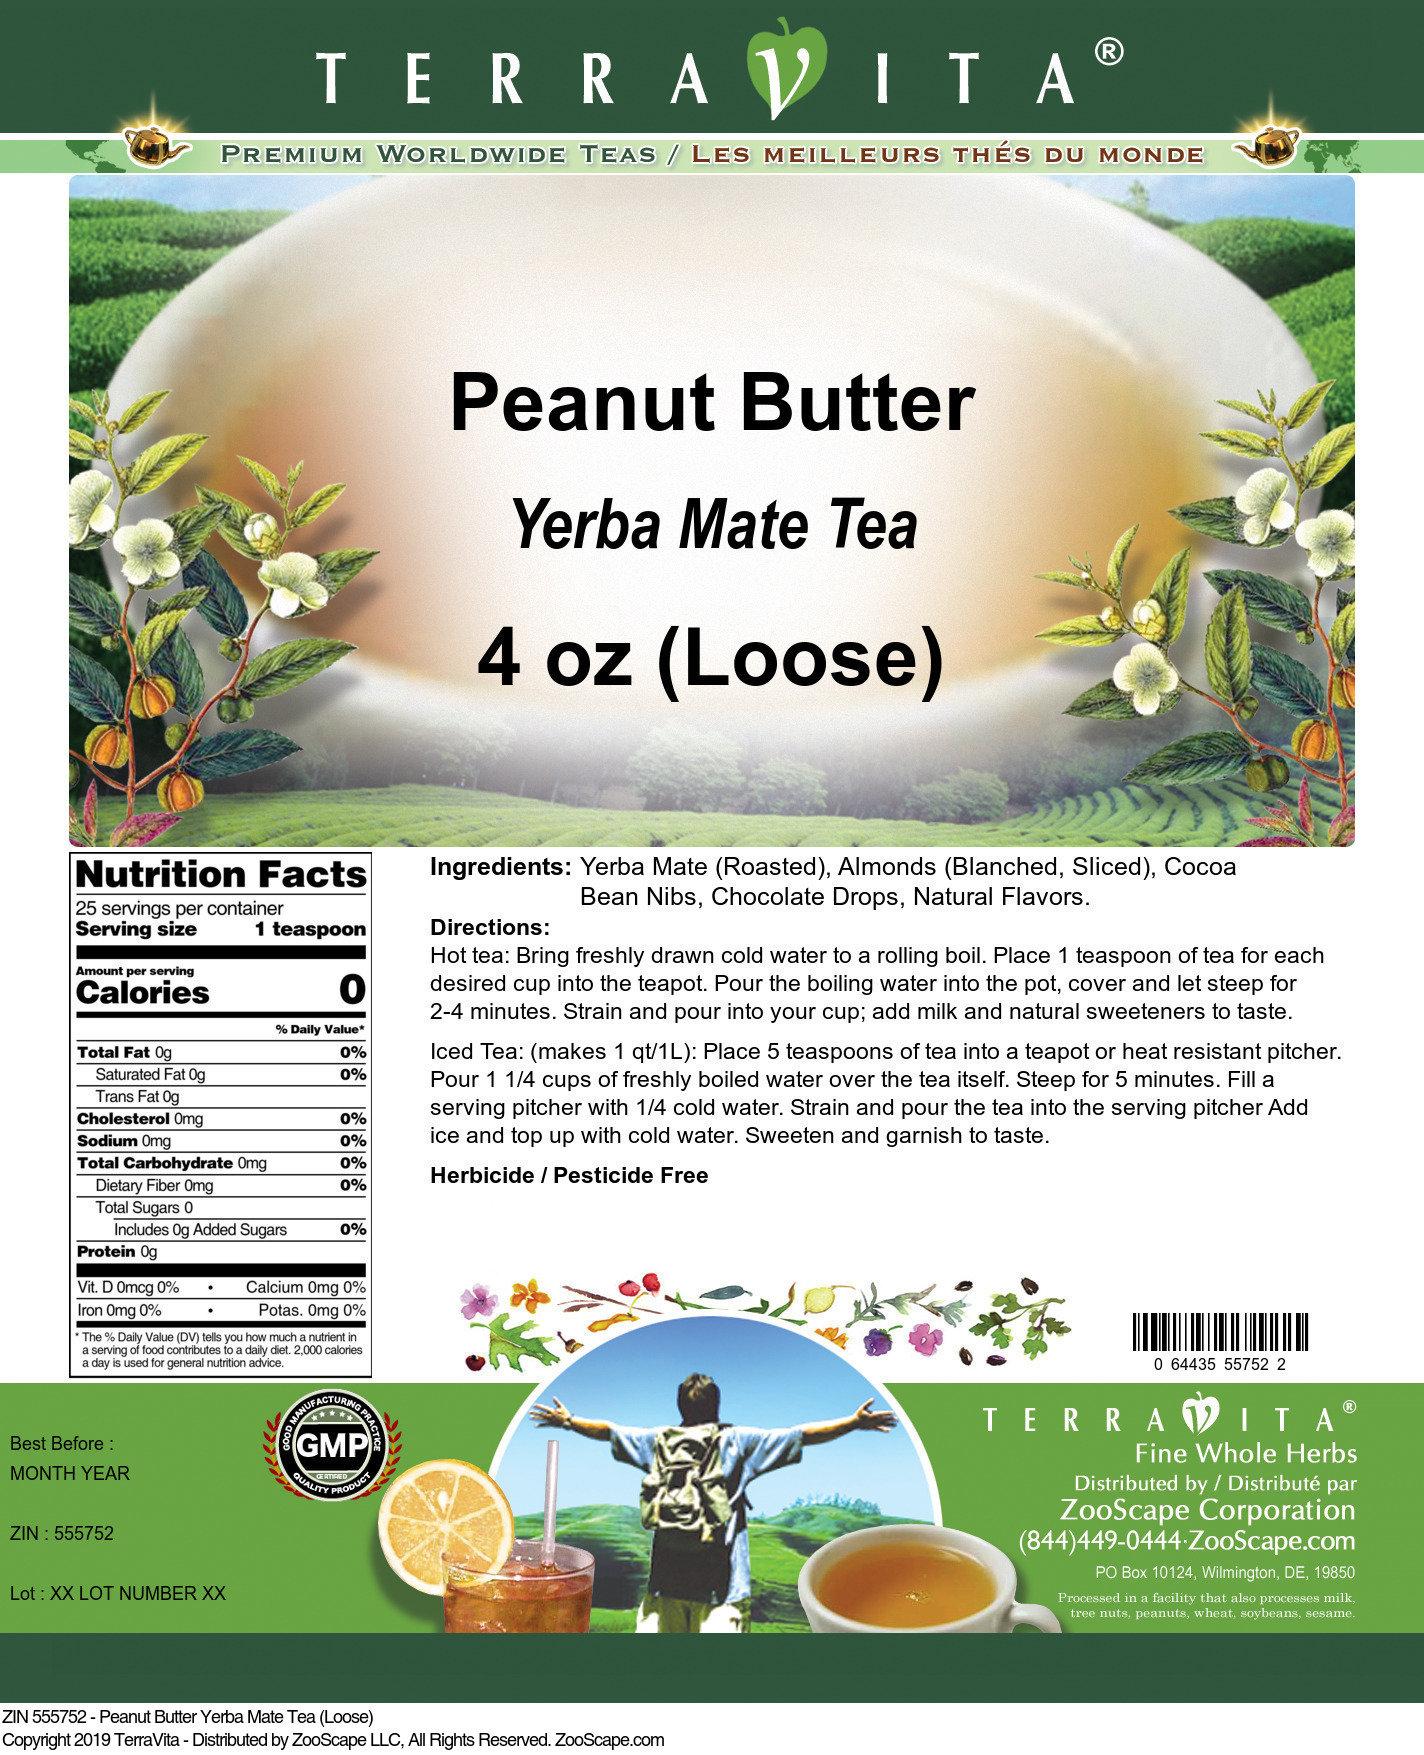 Peanut Butter Yerba Mate Tea (Loose) - Label